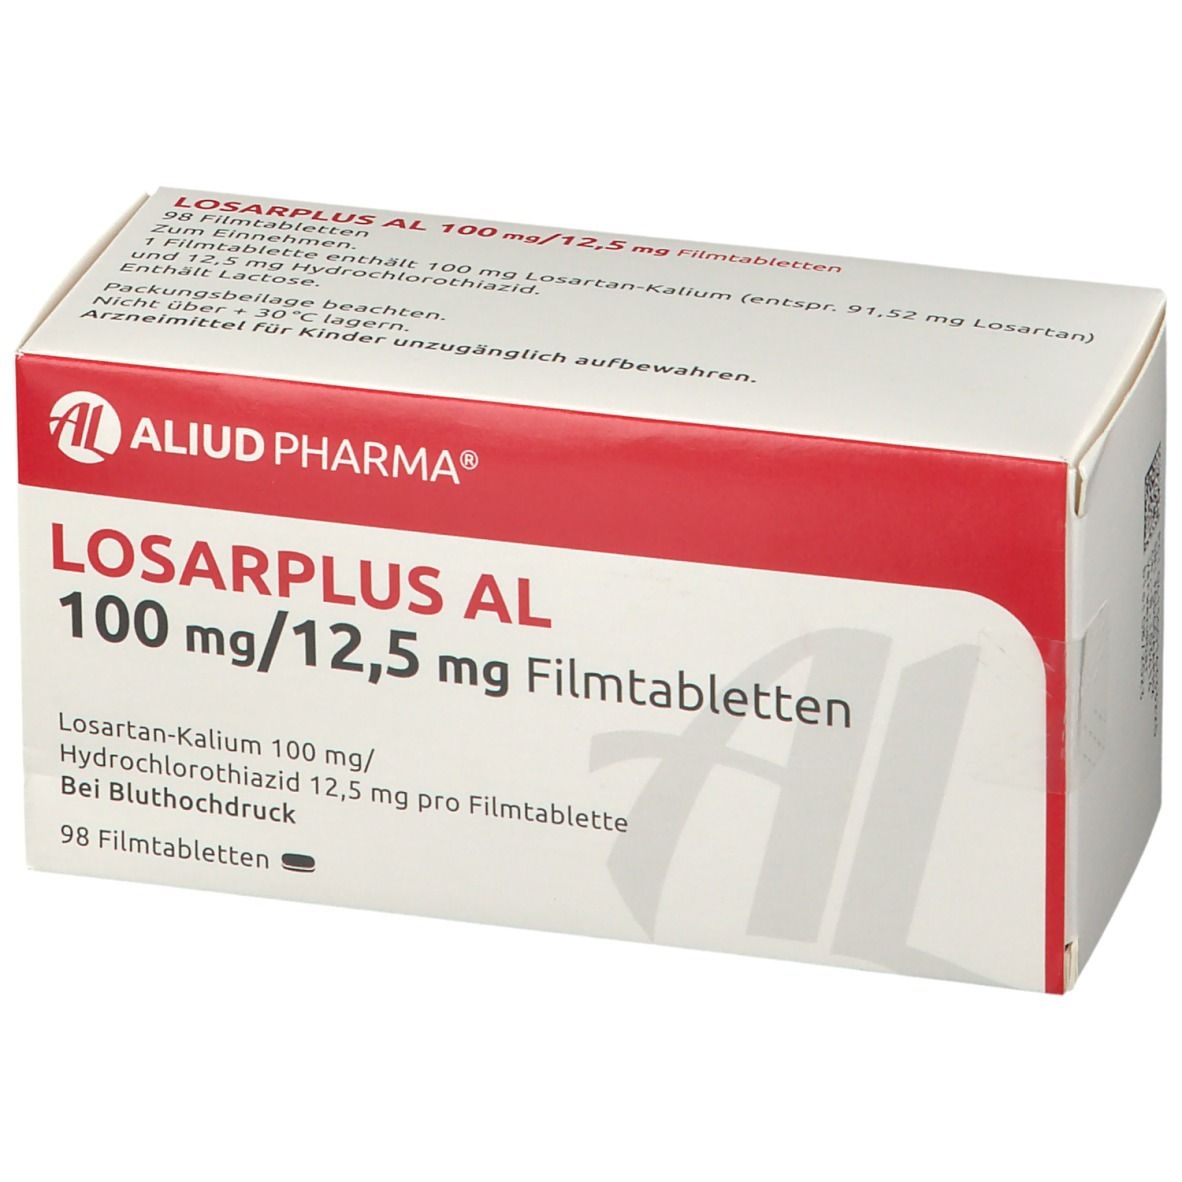 Losarplus AL 100 mg/12,5 mg